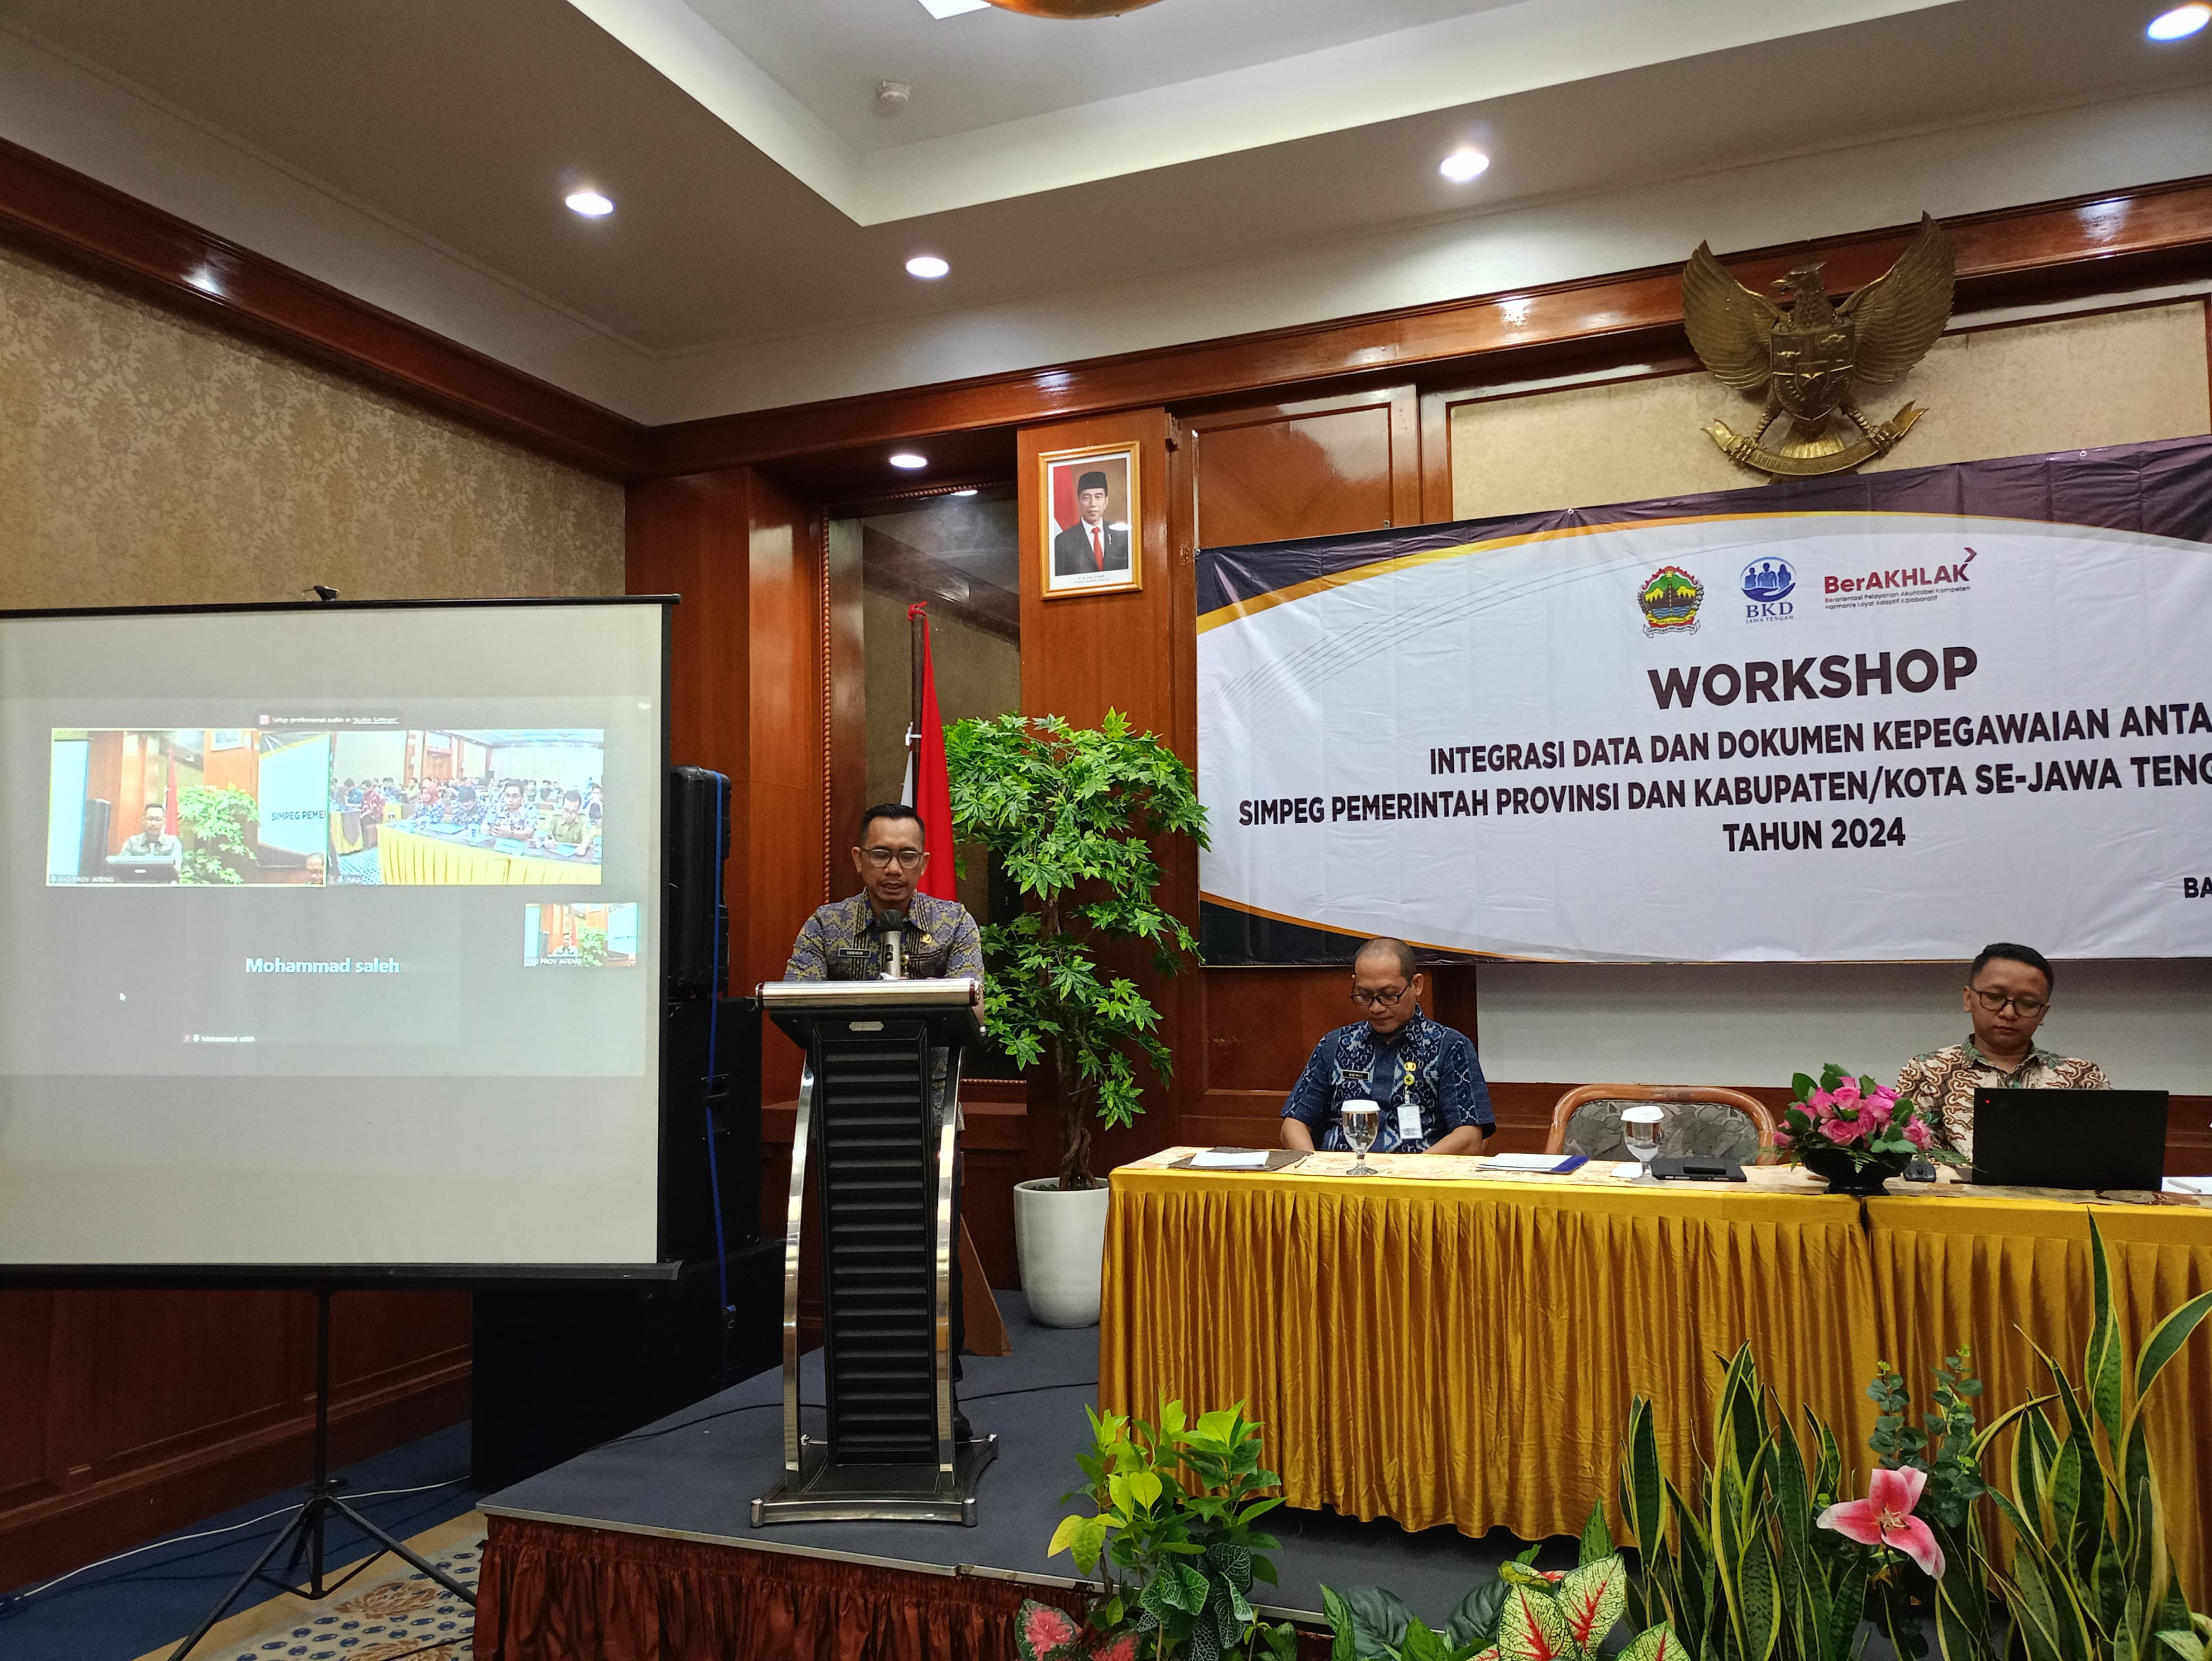 Workshop Integrasi Data Dan Dokumen Kepegawaian Antara Simpeg Pemerintah Provinsi Dan Kabupaten/Kota Se-Jawa Tengah Dengan SIASN